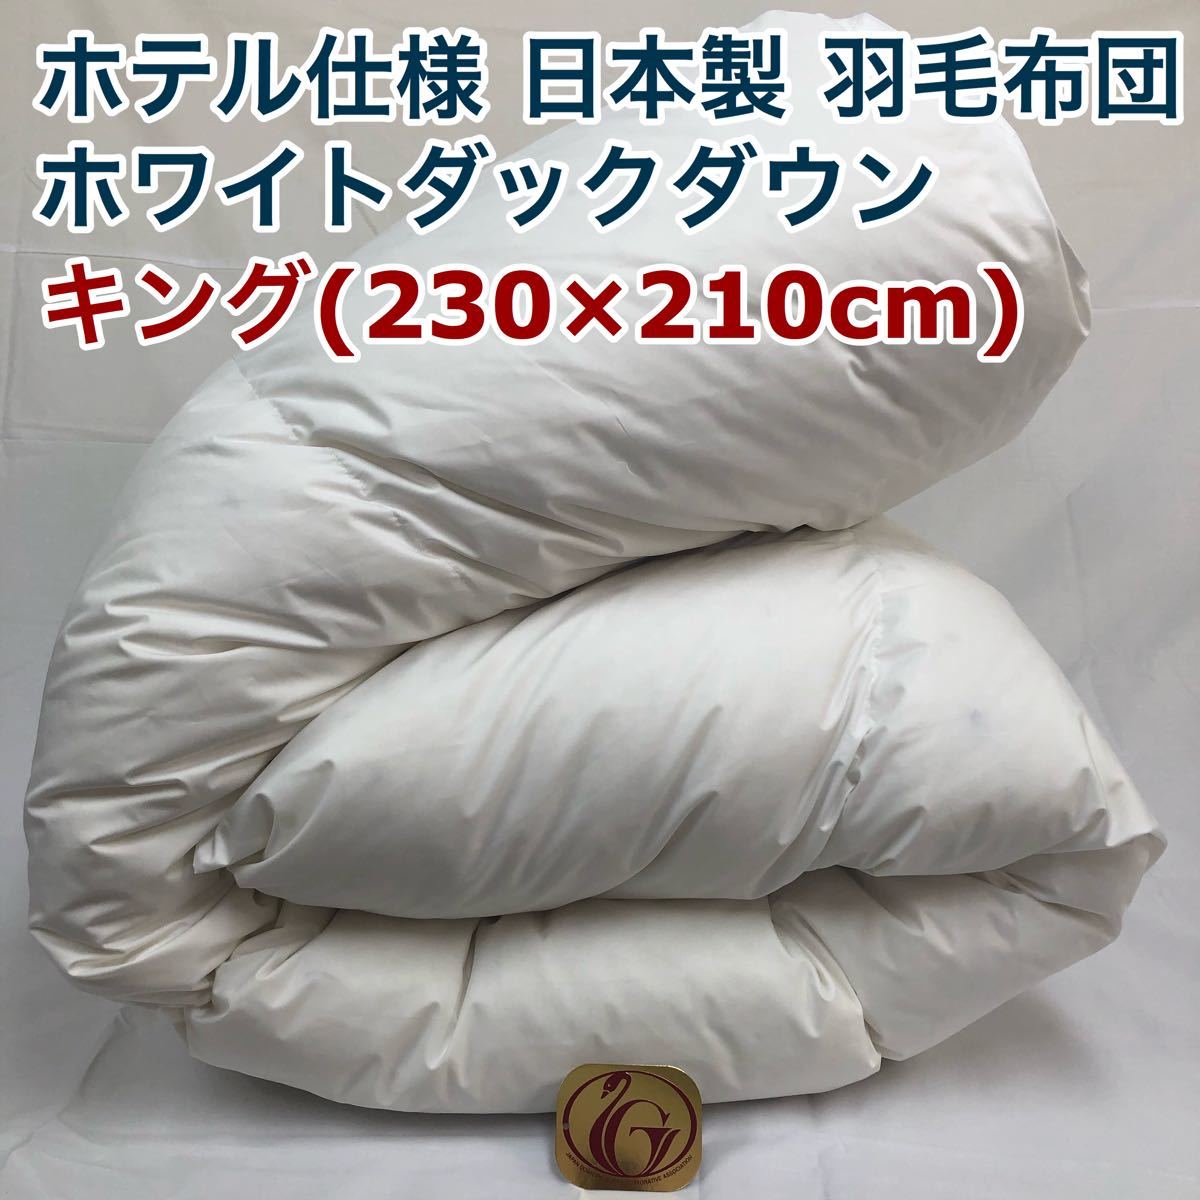 羽毛布団 キング ニューゴールド 白色 日本製 230×210cm